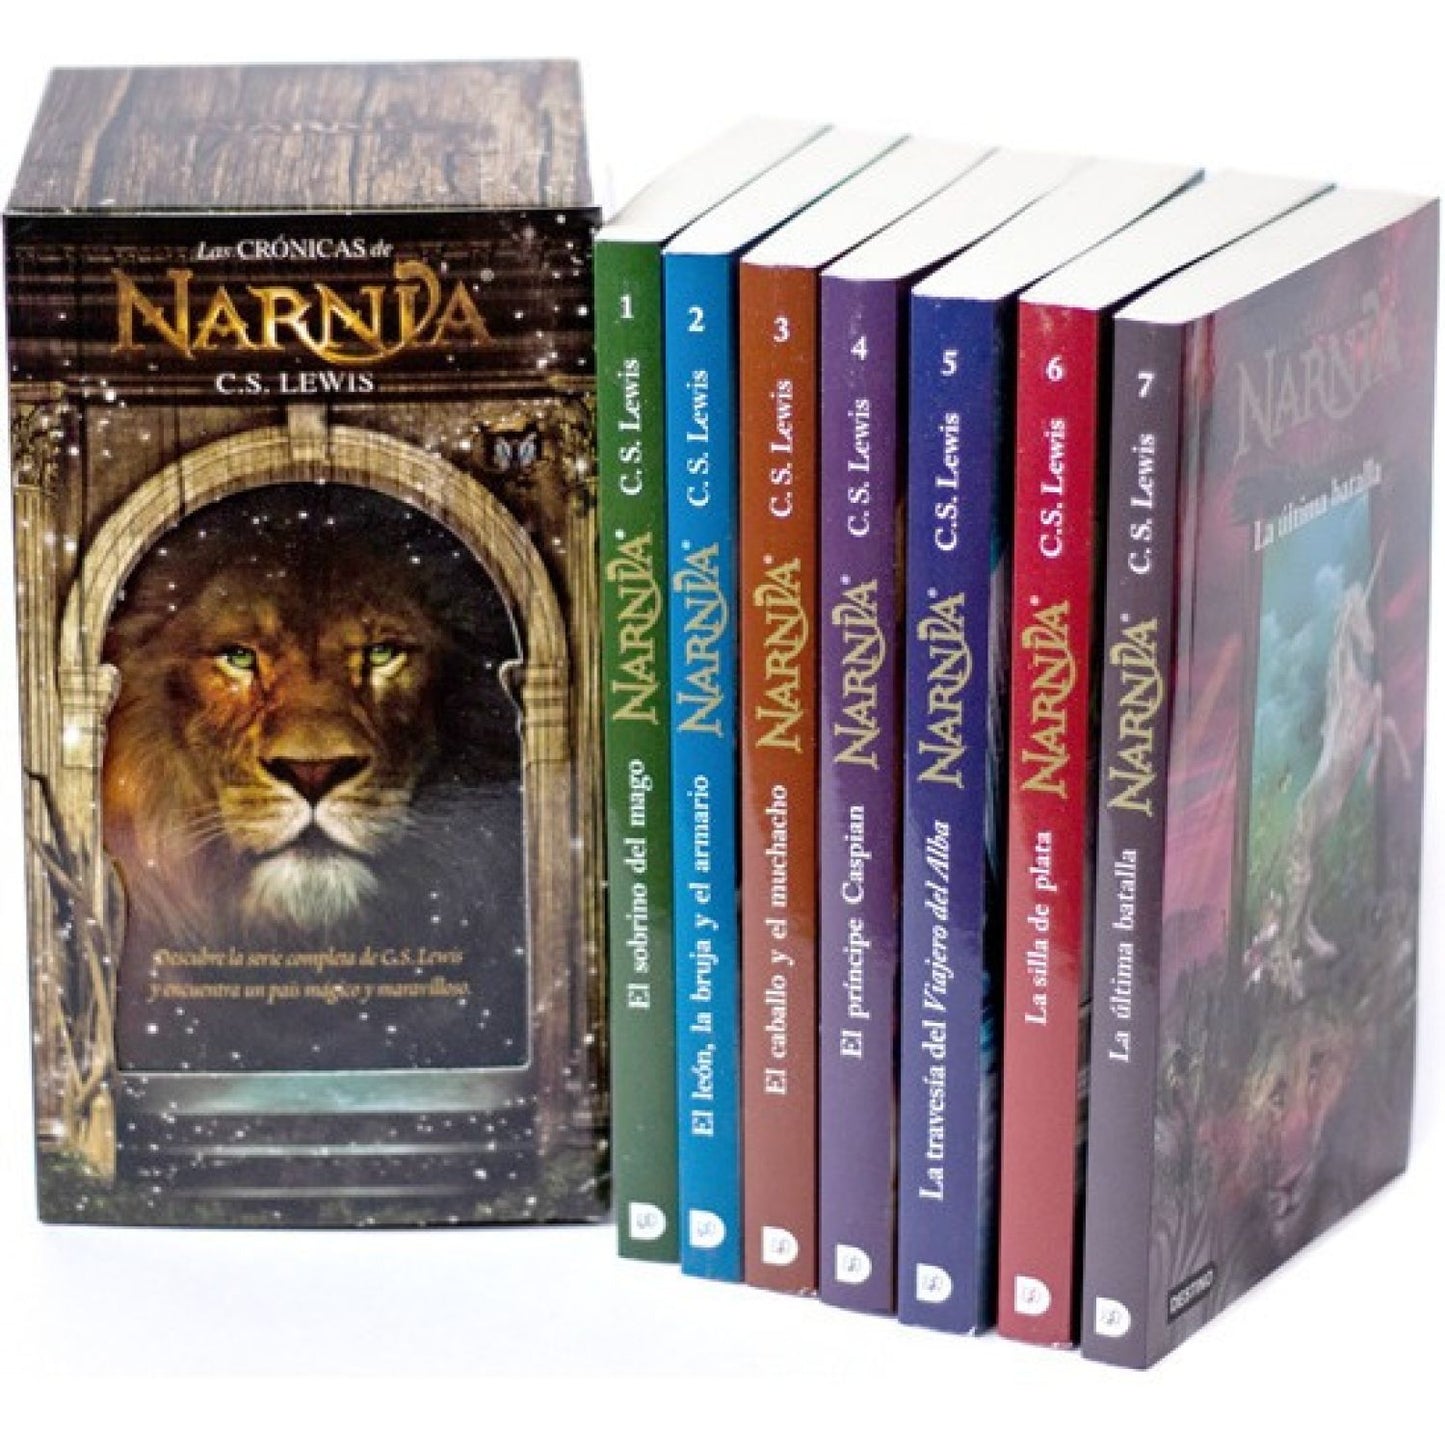 Las crónicas de Narnia (Estuche 7 libros) - C. S. Lewis